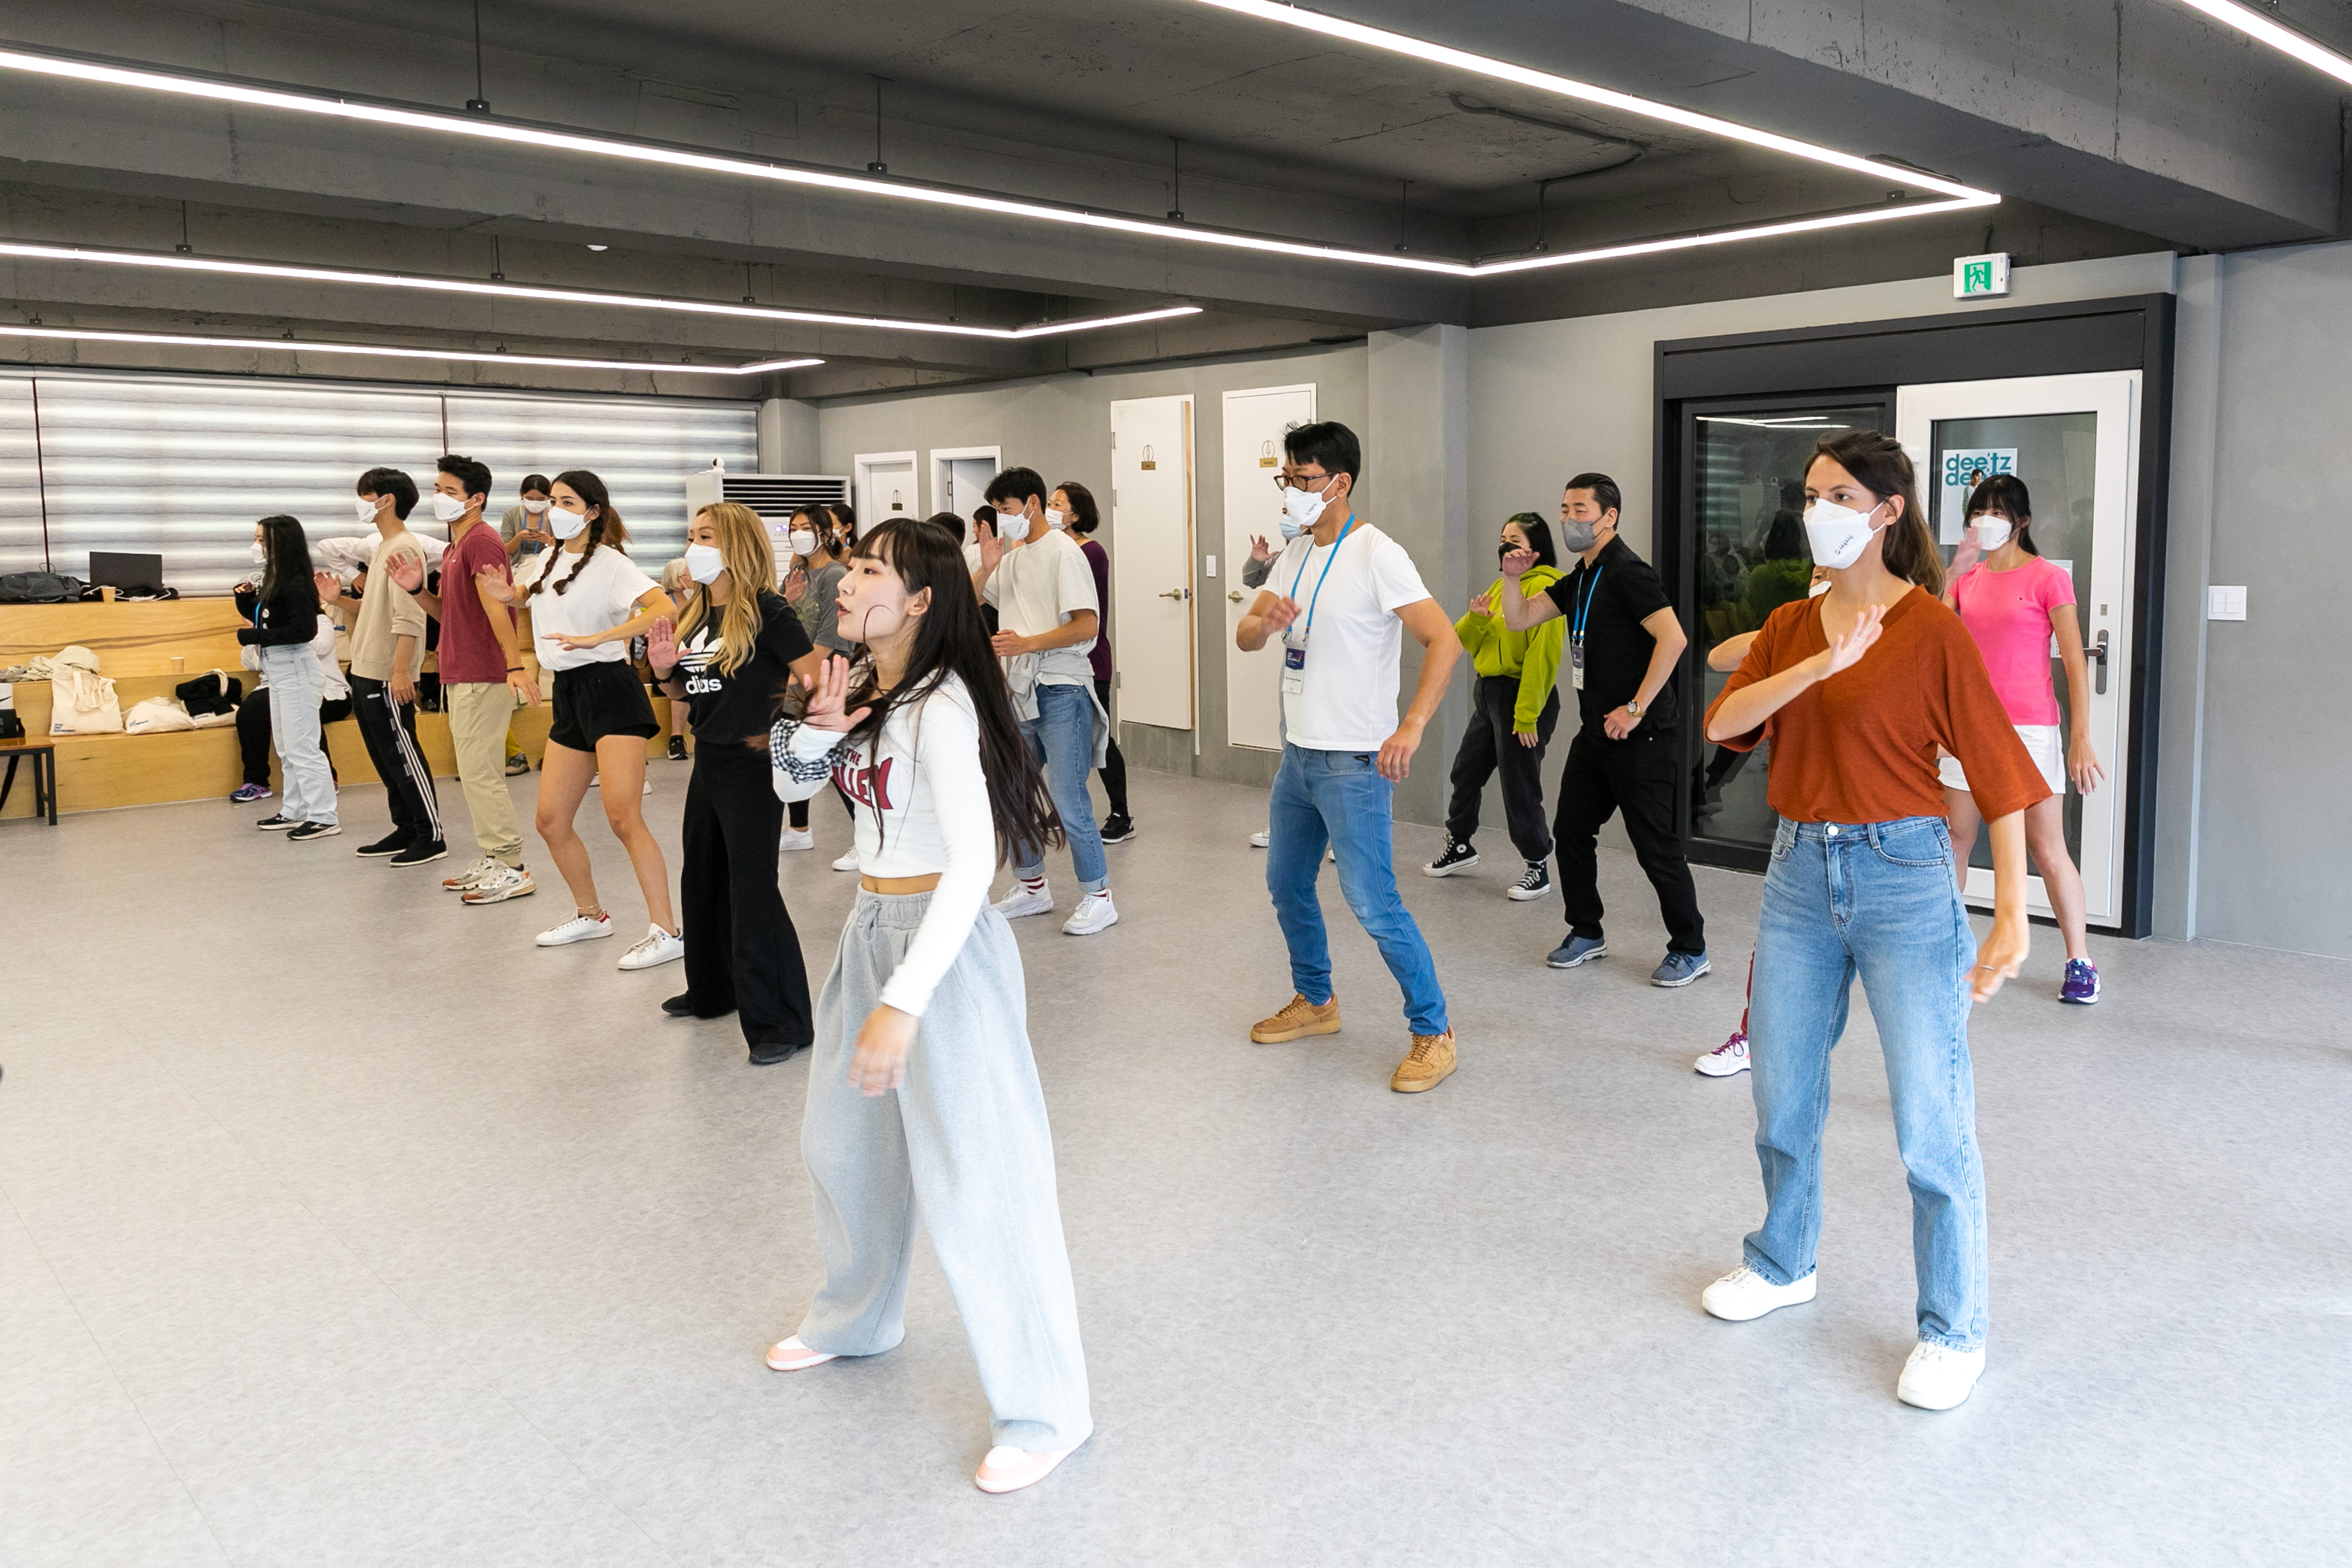 [Опыт корейской культуры | K-Pop] Усыновленные корейские дети наслаждаются динамизмом корейской культуры, изучая танцы K-pop, представитель K-контента